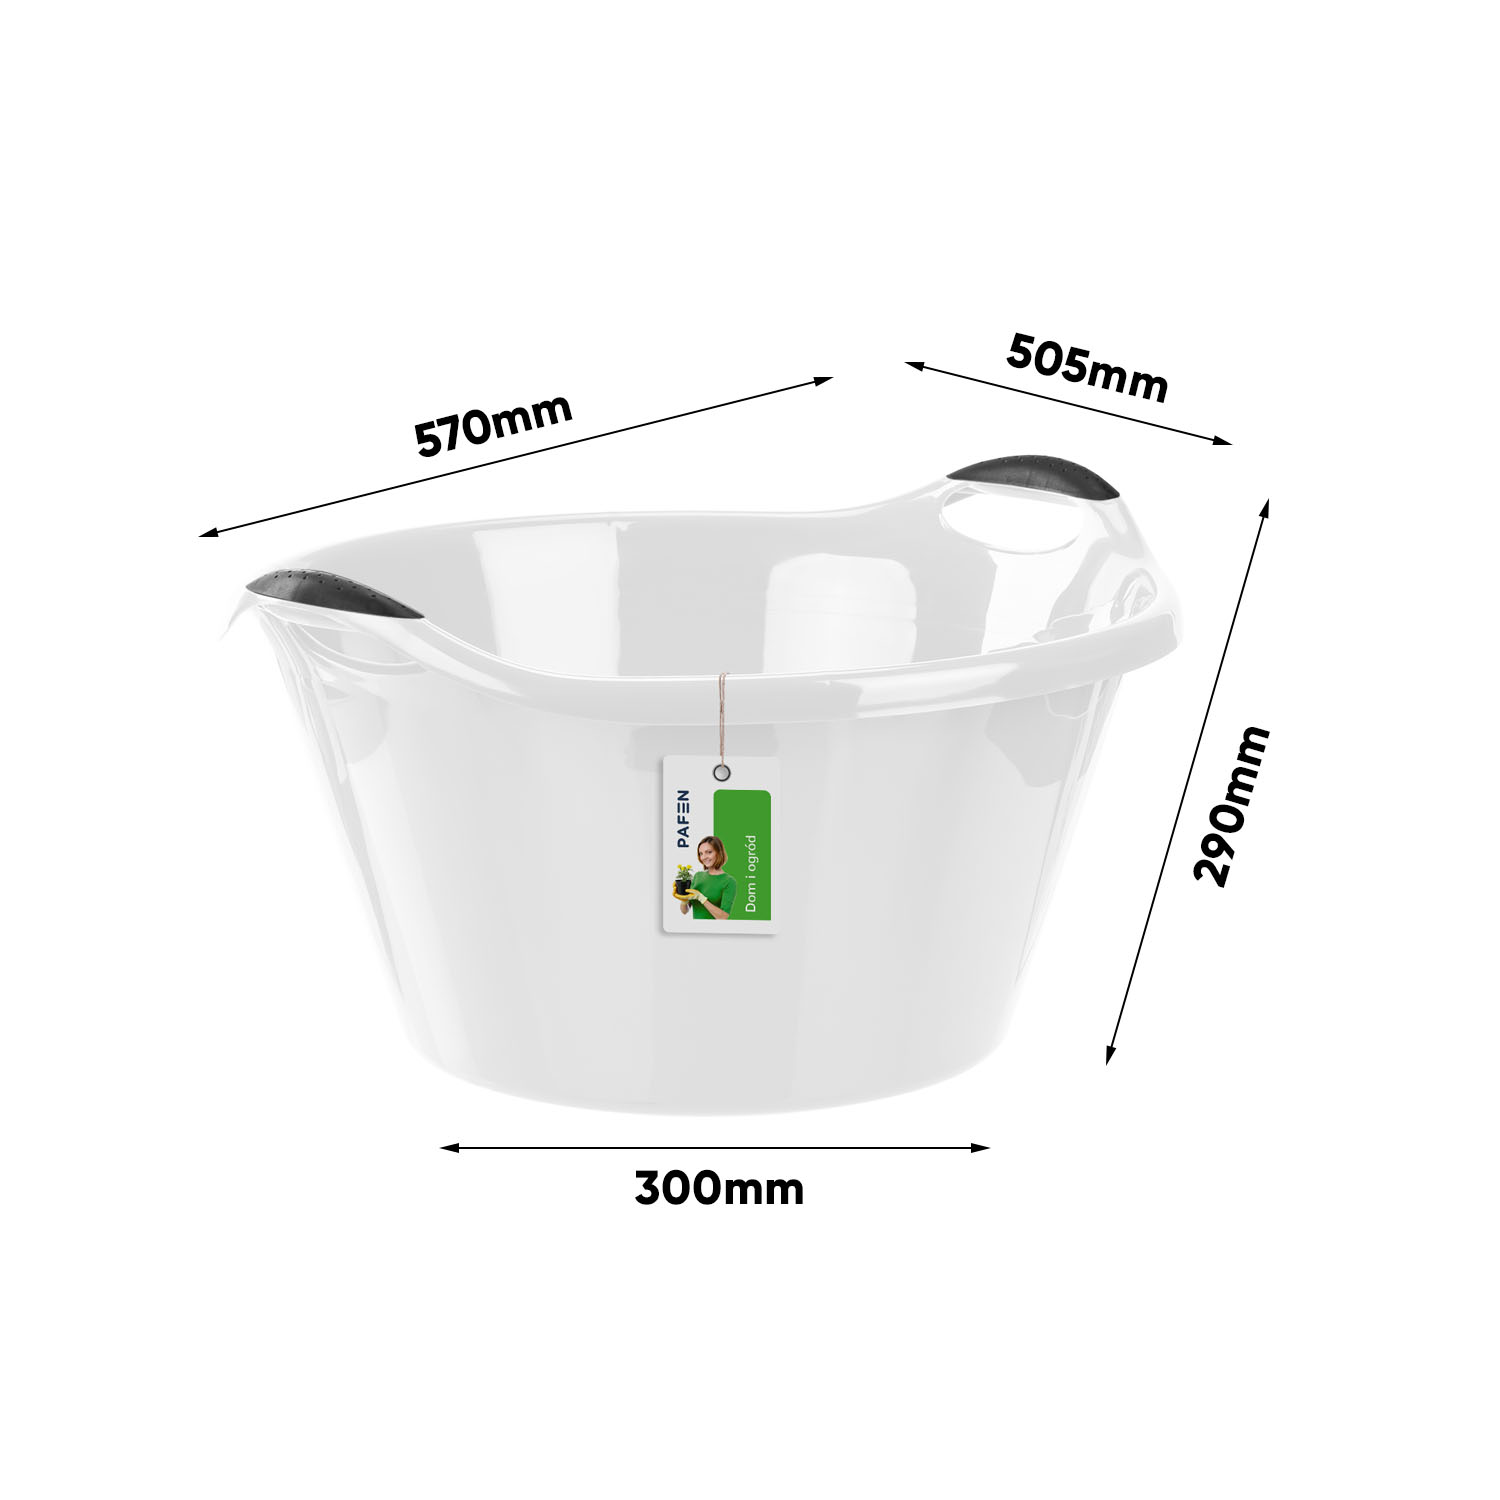 Wymiary Laundry bowl set Grey (1)